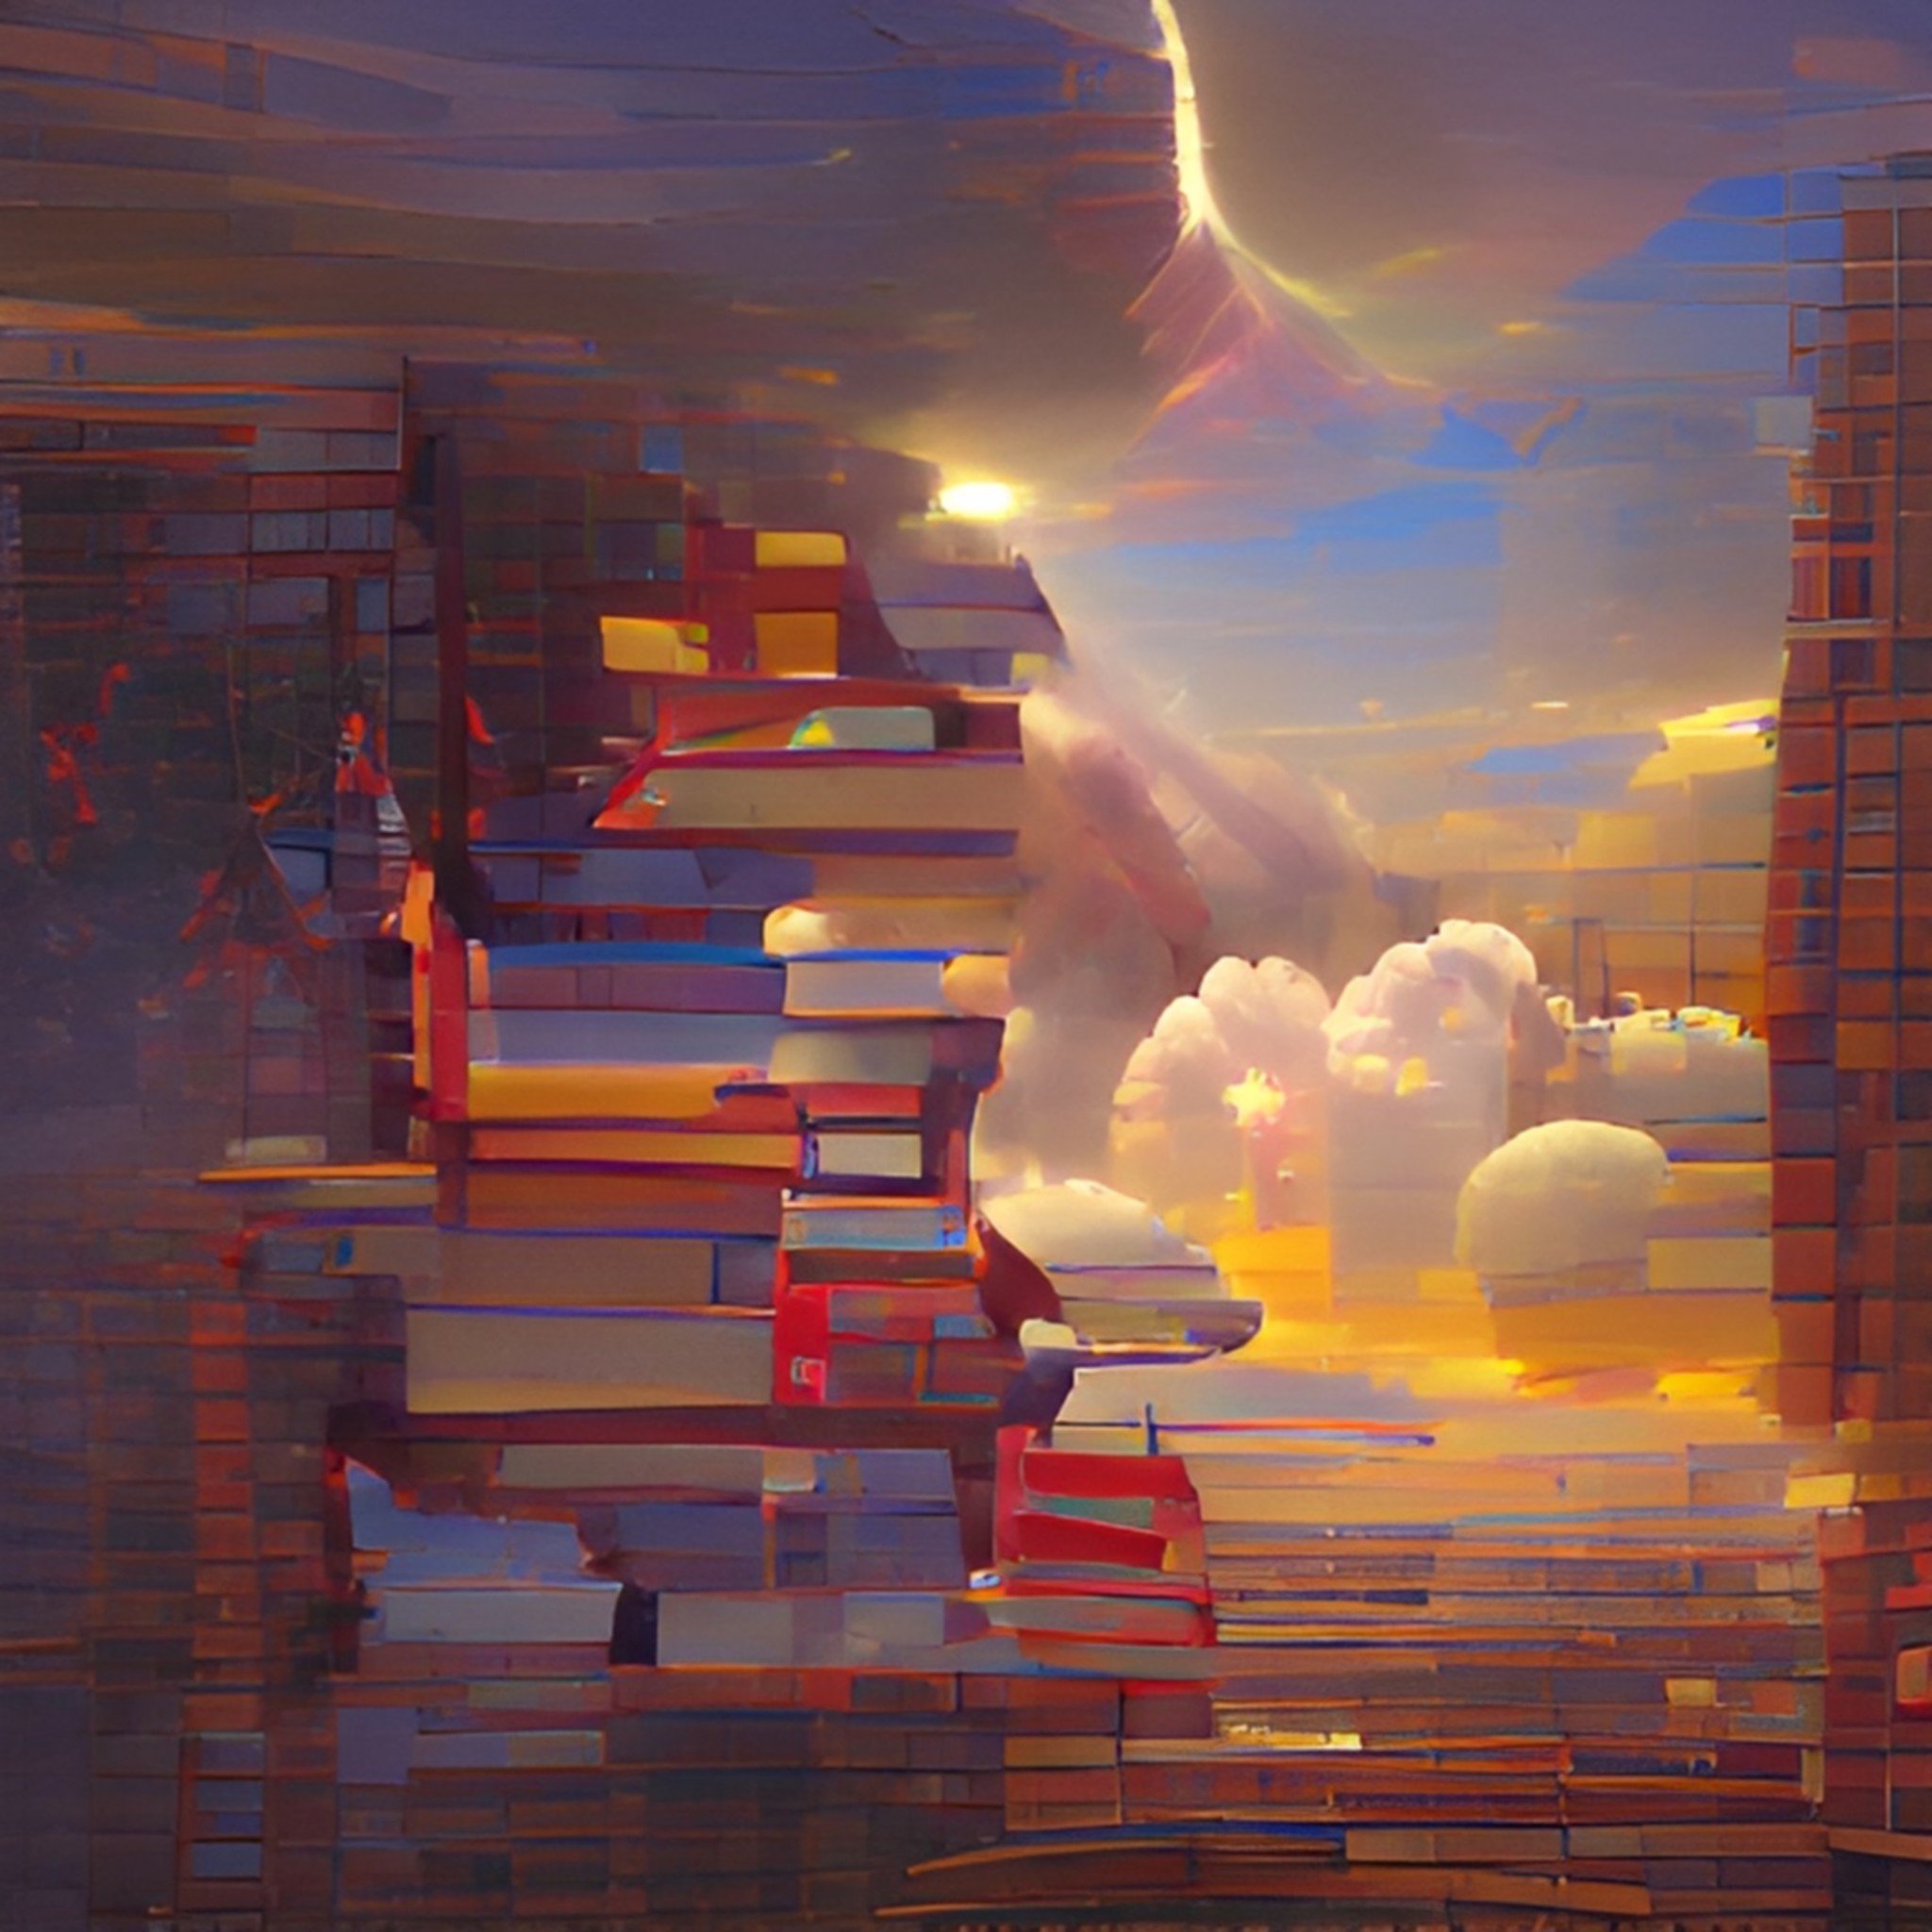 Book-io-building-the-future-of-books